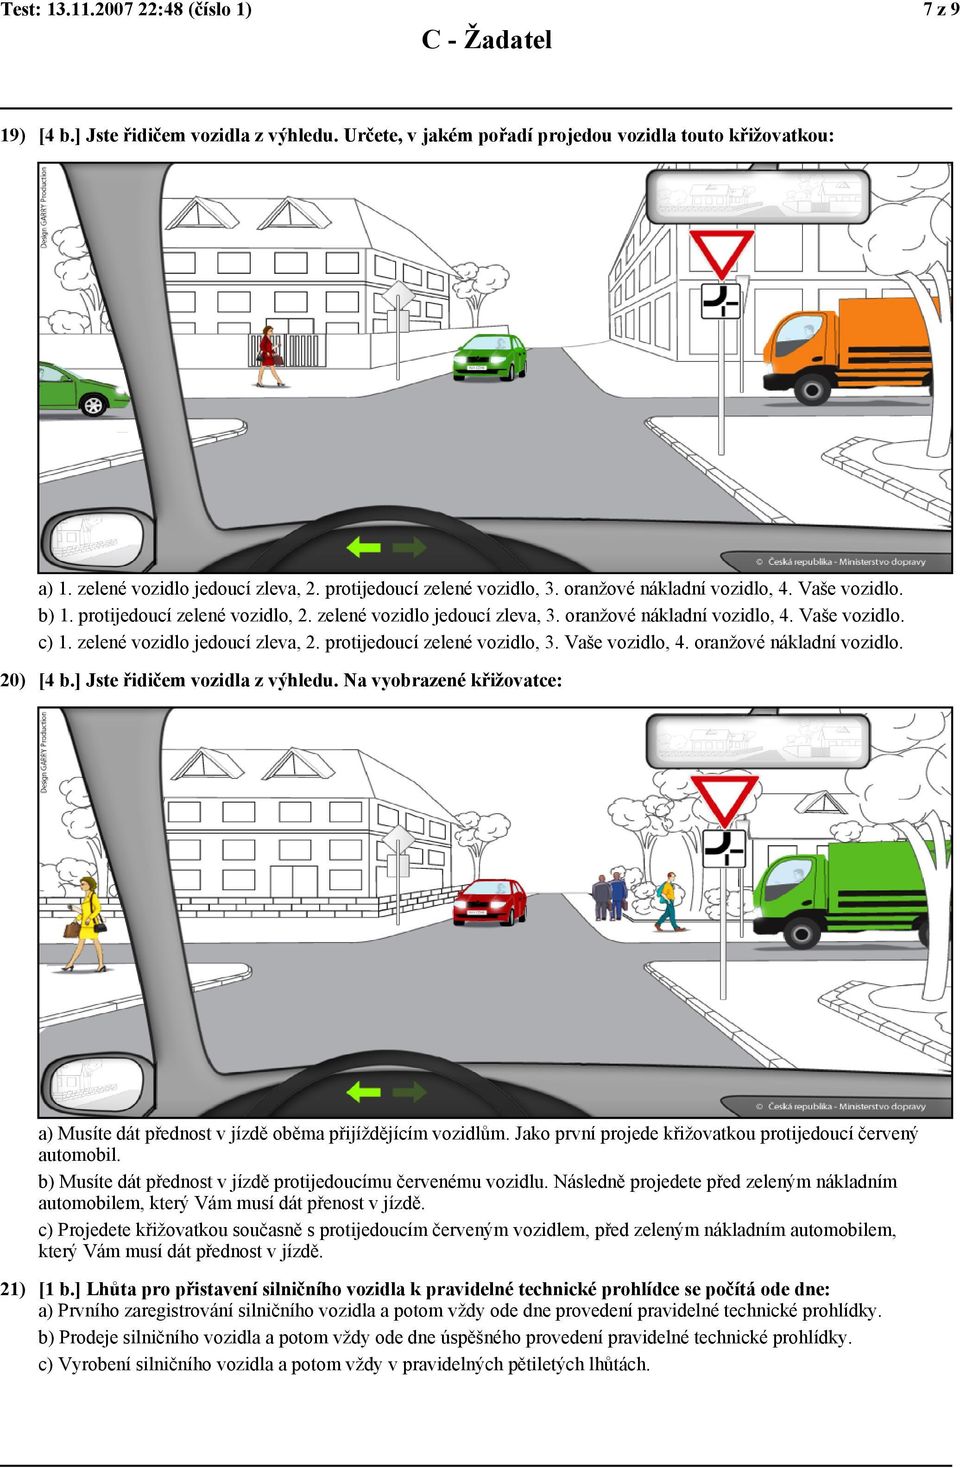 zelené vozidlo jedoucí zleva, 2. protijedoucí zelené vozidlo, 3. Vaše vozidlo, 4. oranžové nákladní vozidlo. 20) [4 b.] Jste řidičem vozidla z výhledu.